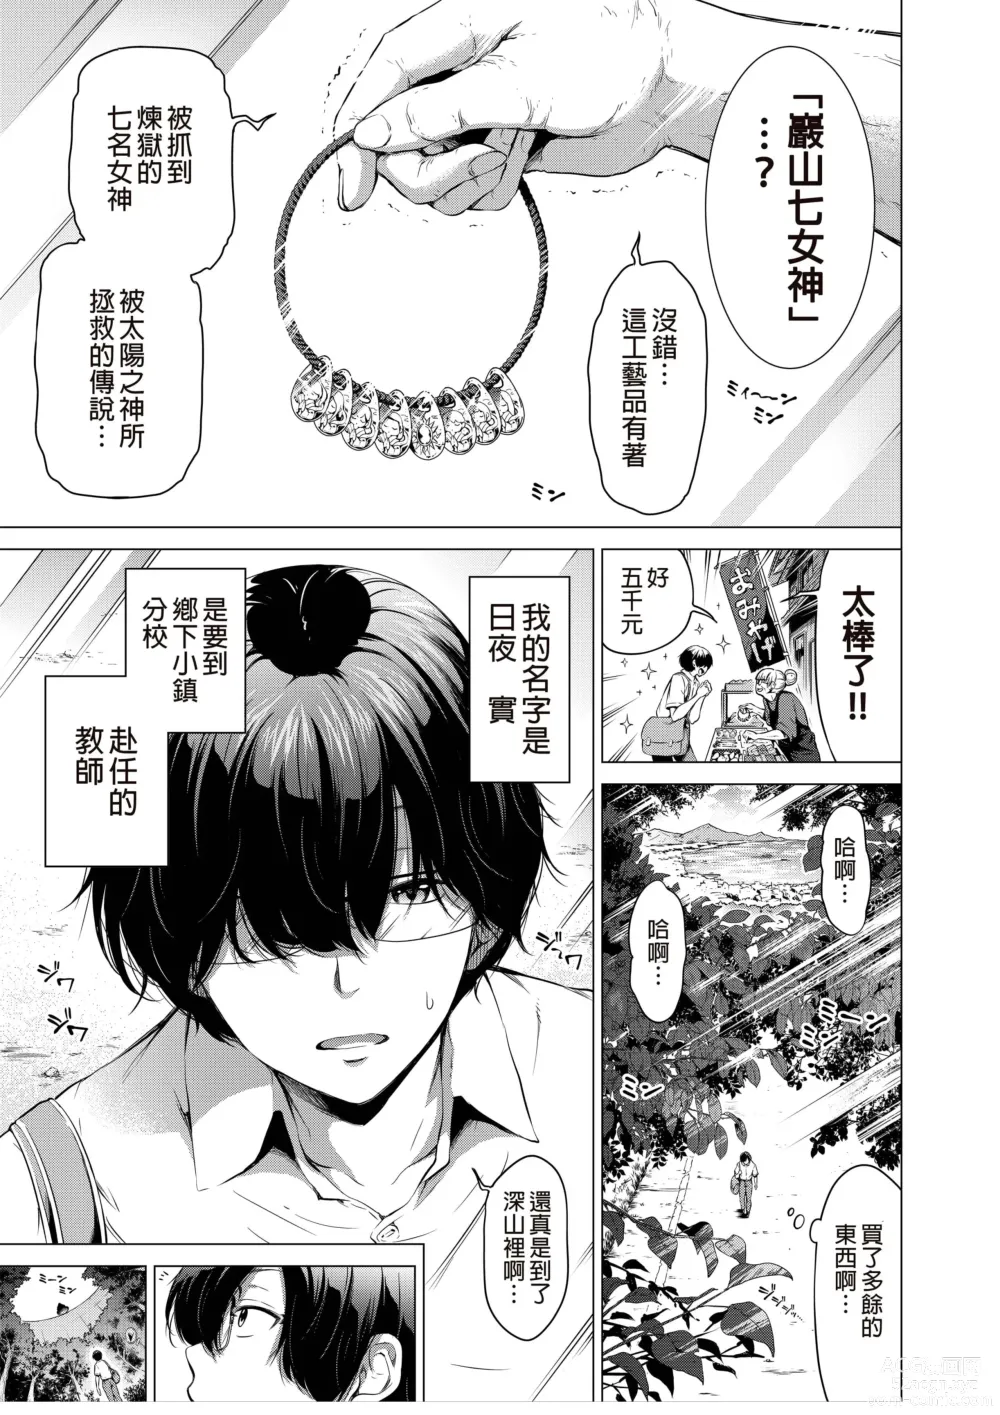 Page 2 of manga nanaka no rakuen1